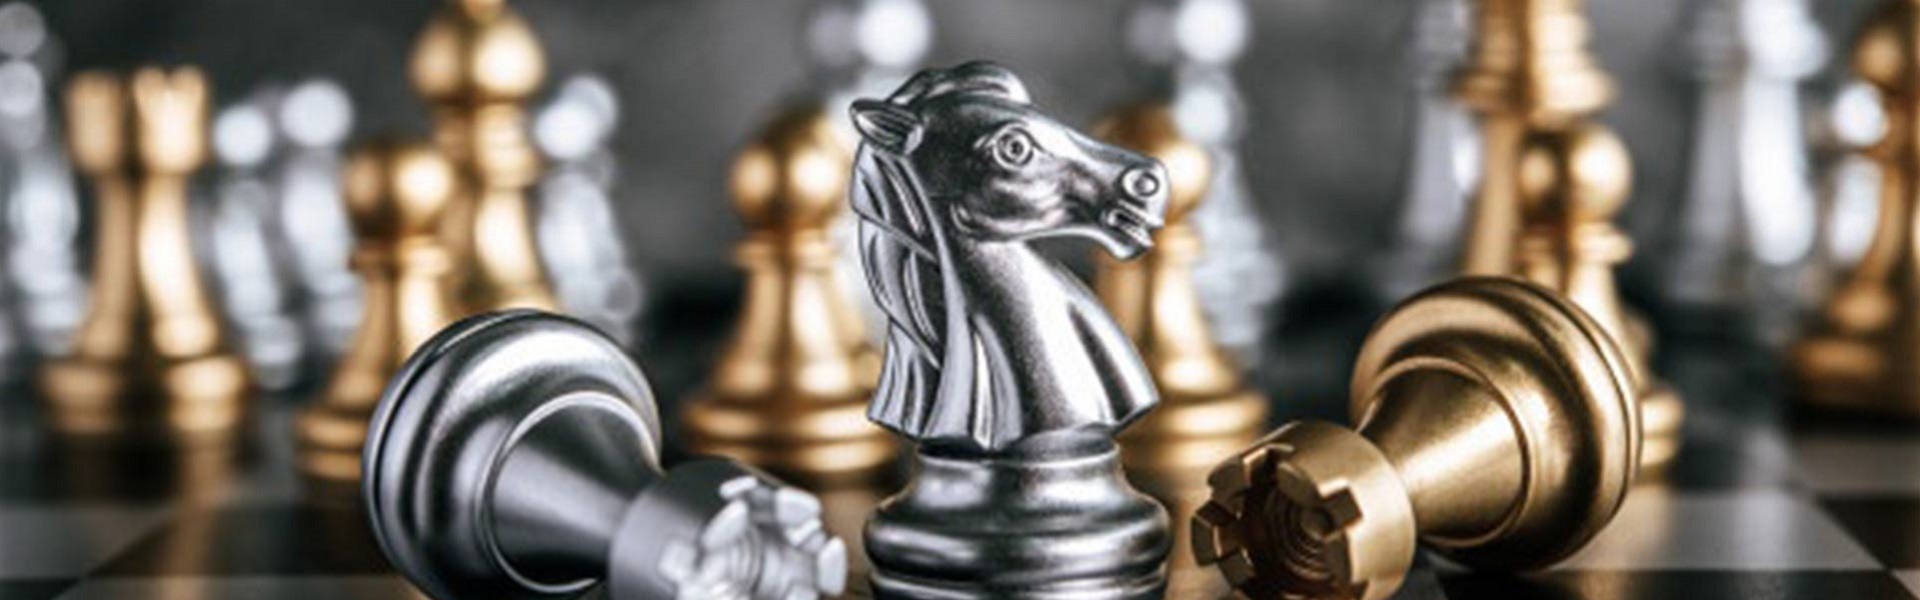 Iznajmljivanje auto dizalice krana |  Chess lessons Dubai & New York